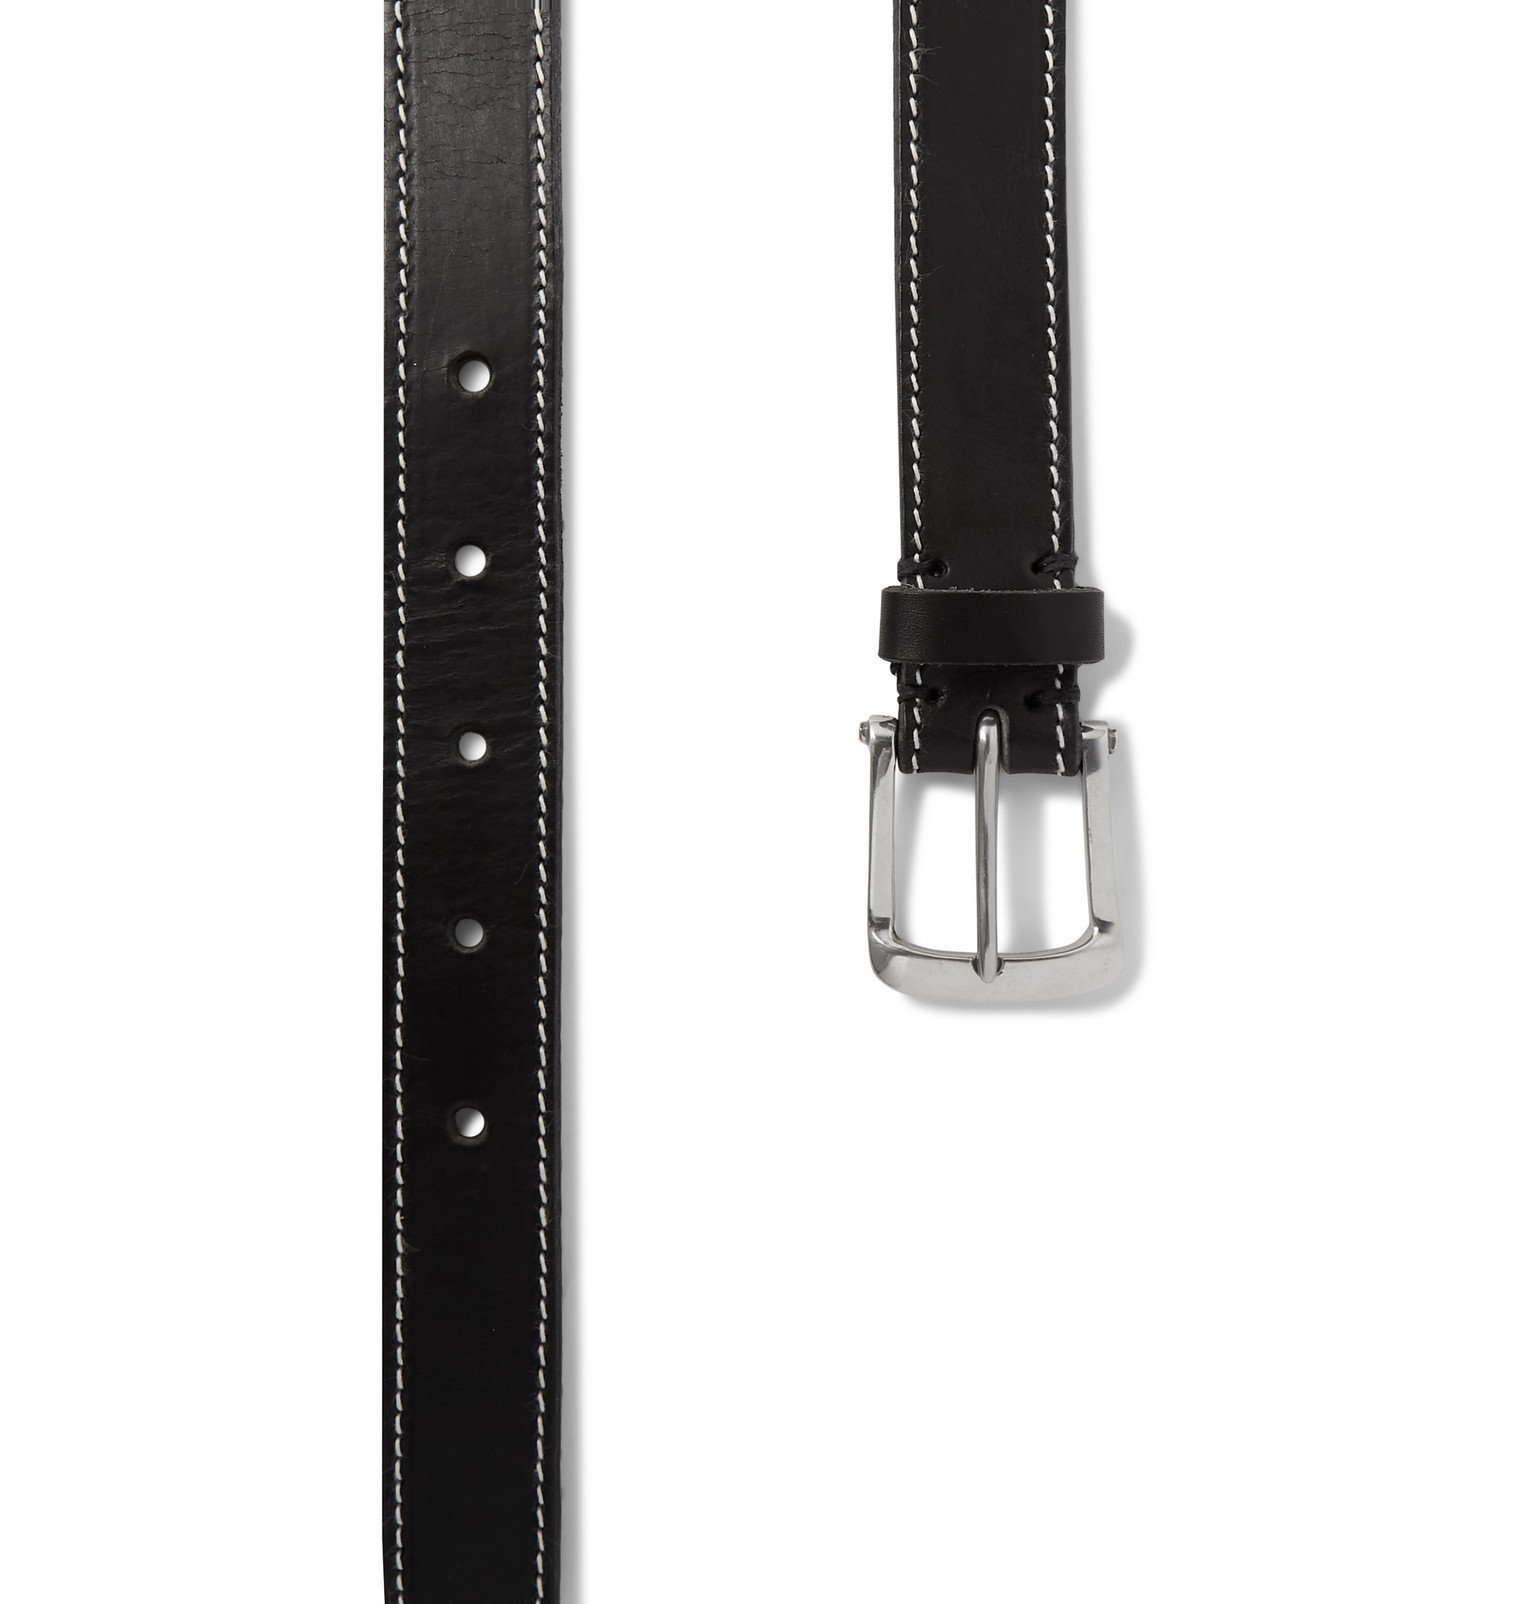 Oliver Spencer - 3cm Black Leather Belt - Black